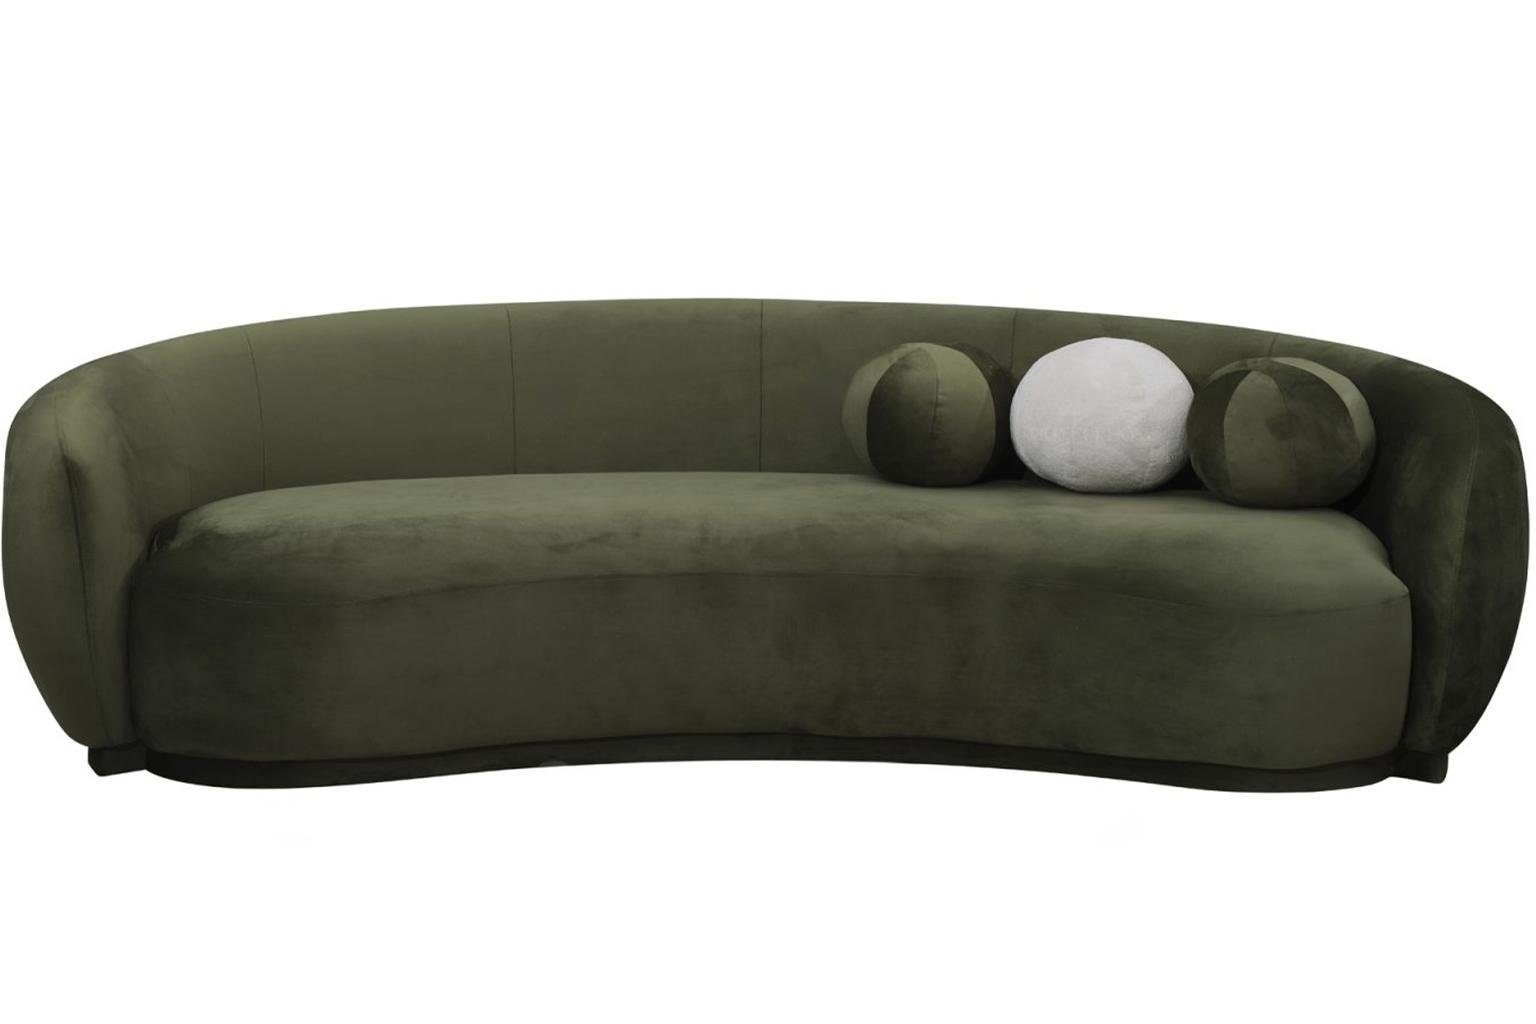 Modern, Made 1 3-Sitzer Couch Teile, JVmoebel 3 Sofa Grün Dreisitzer in Europa Sitzer Luxus Polstersofa